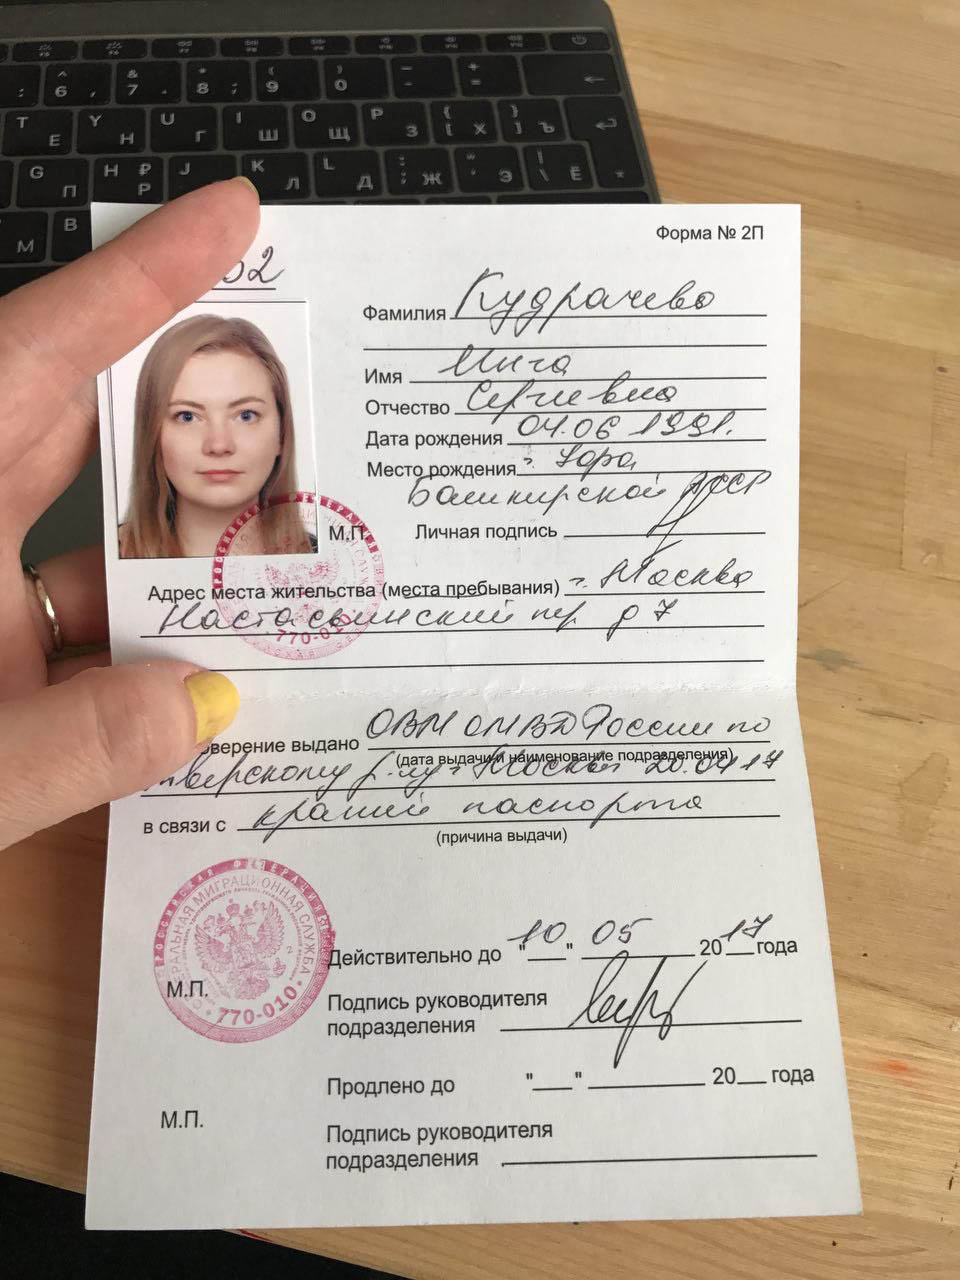 Временное удостоверение личности при замене паспорта